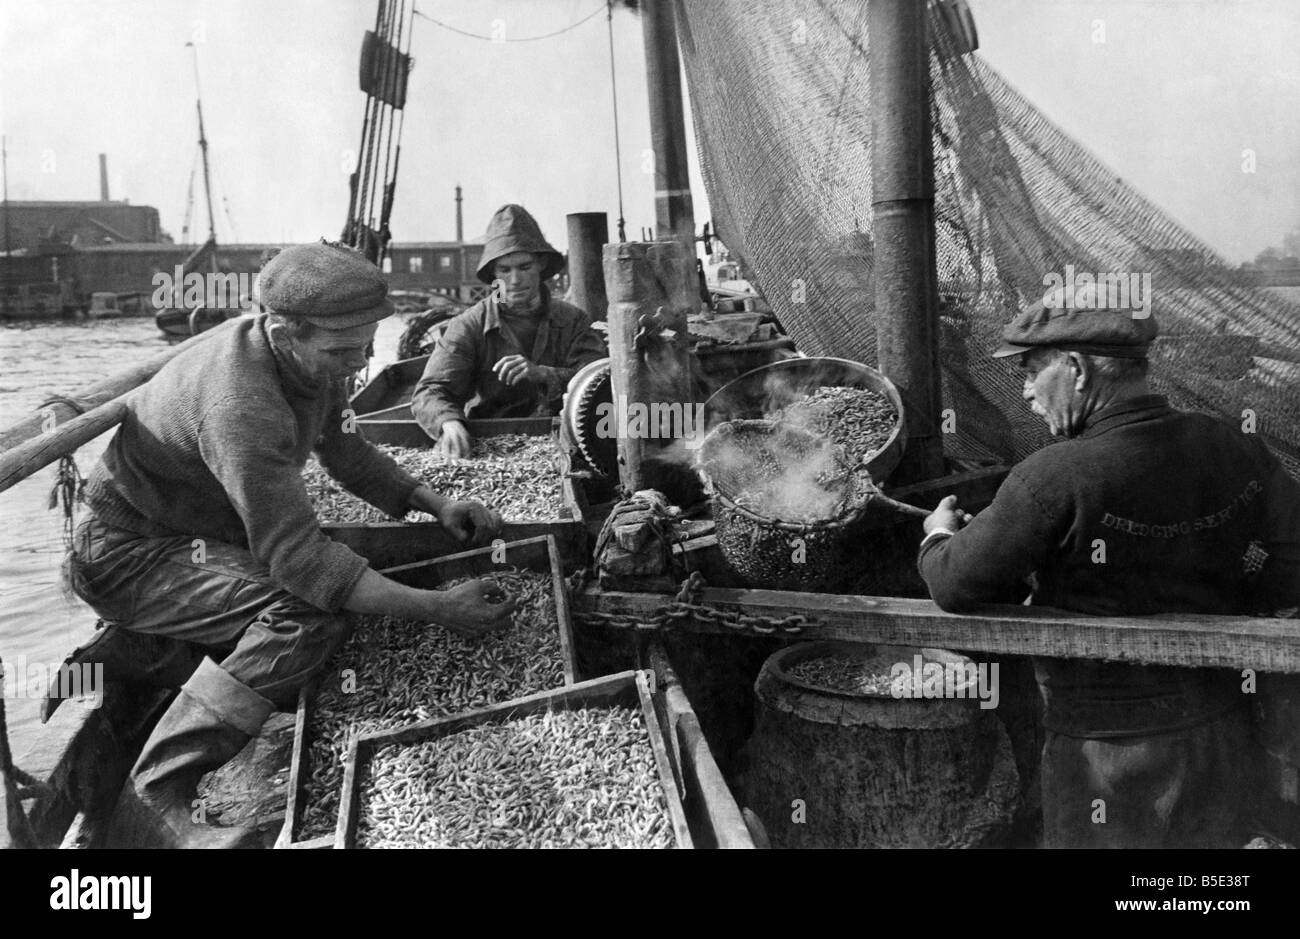 Les rendements de la récolte de crevettes Thames à Gravesend, Kent;Skipper Henry Sutherland se tire très bien de crevettes dans la Gravesend Atteindre de la Thames. À bord du "Bawley Lilian' les crevettes sont tamisés, cuits dans un cuivre, refroidi et mis en sacs pour être envoyé à Londres. Un tout petit de bateaux de pêche de sortir de Gravesend tous les jours. Parfois, ils reviennent avec un canard, ainsi que les crevettes. ;Octobre 1943 Banque D'Images